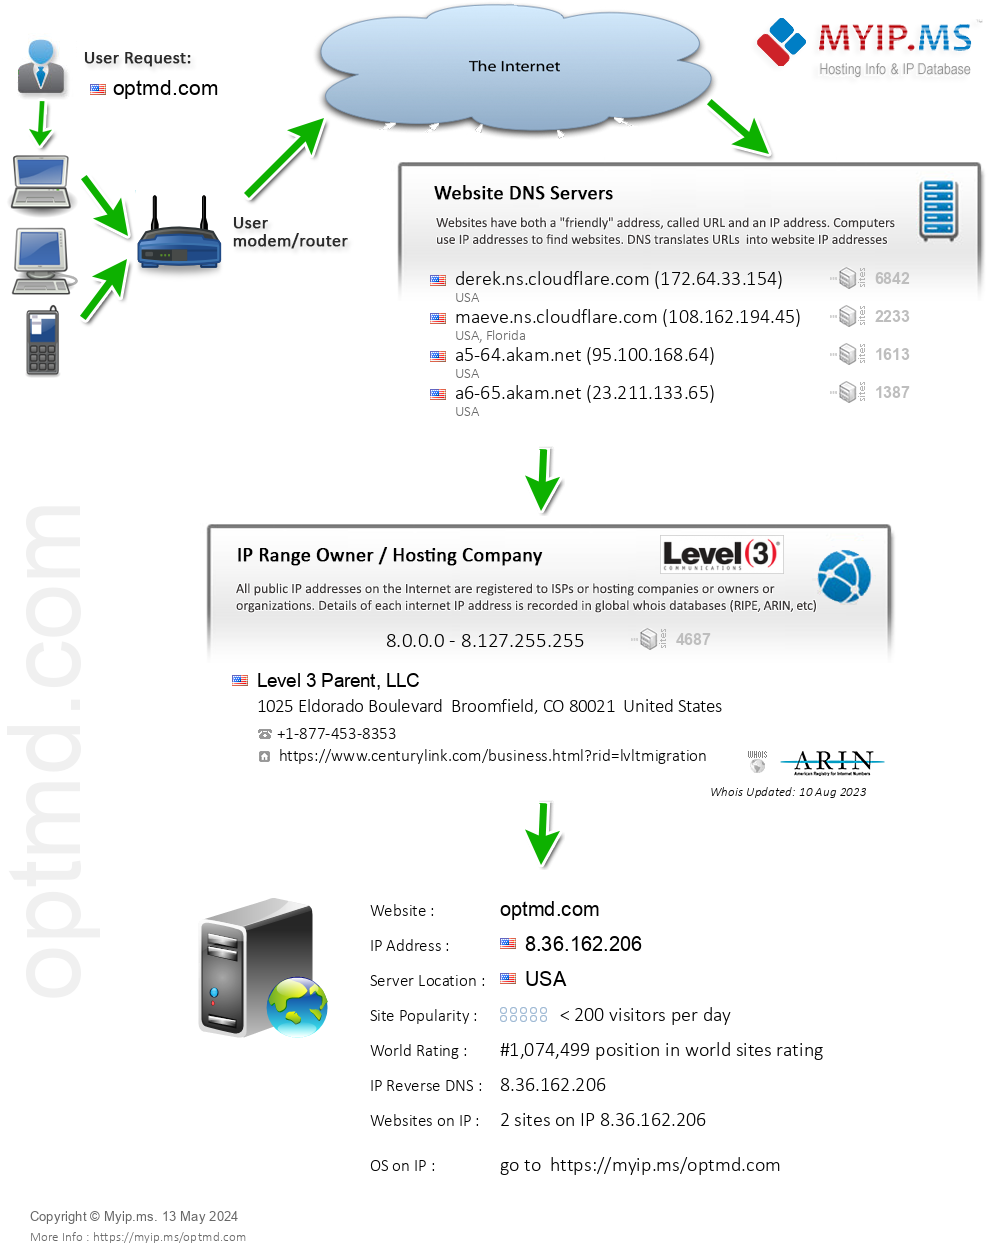 Optmd.com - Website Hosting Visual IP Diagram